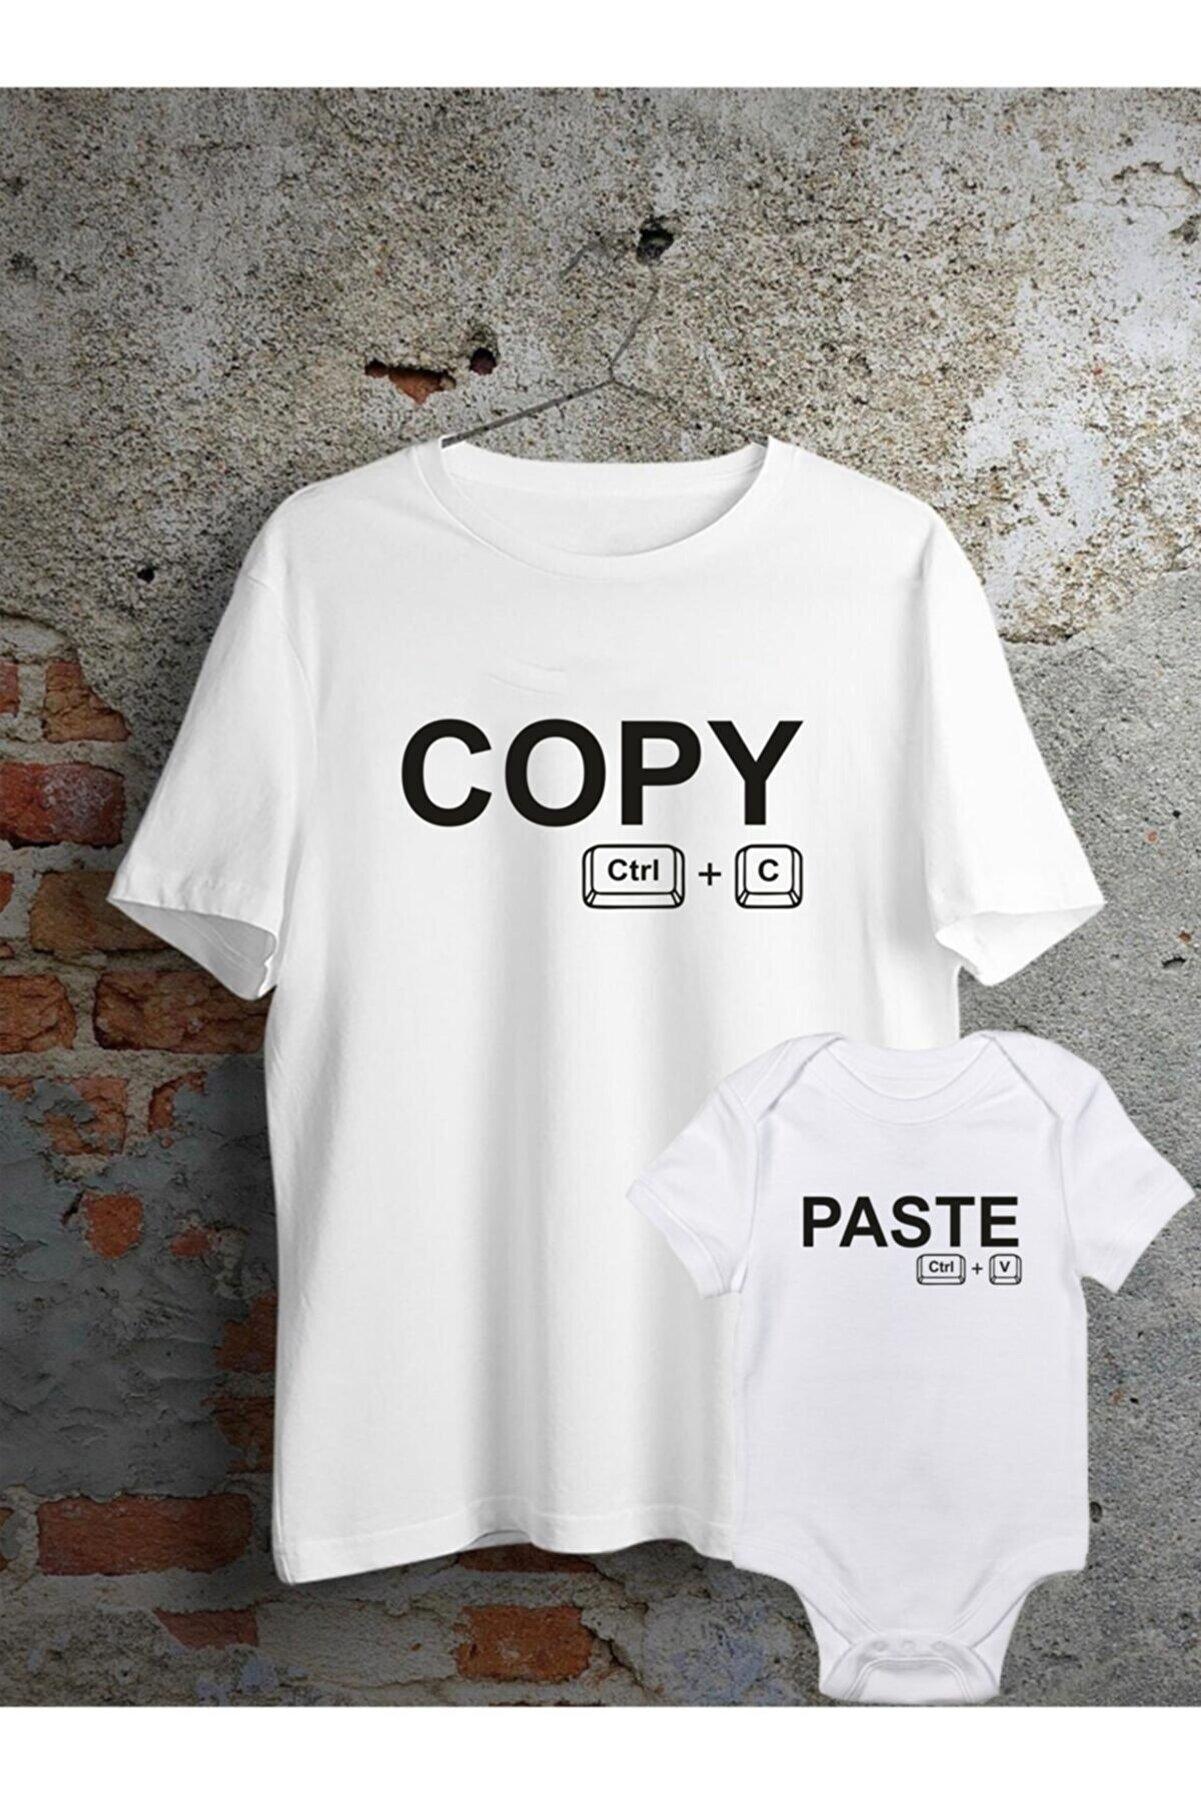 Baba Oğul Kız Copy Paste Zıbın Tshirt(Tek Ürün Fiyatıdır Kombin Yapmak için 2 Adet Sepete Ekleyiniz)